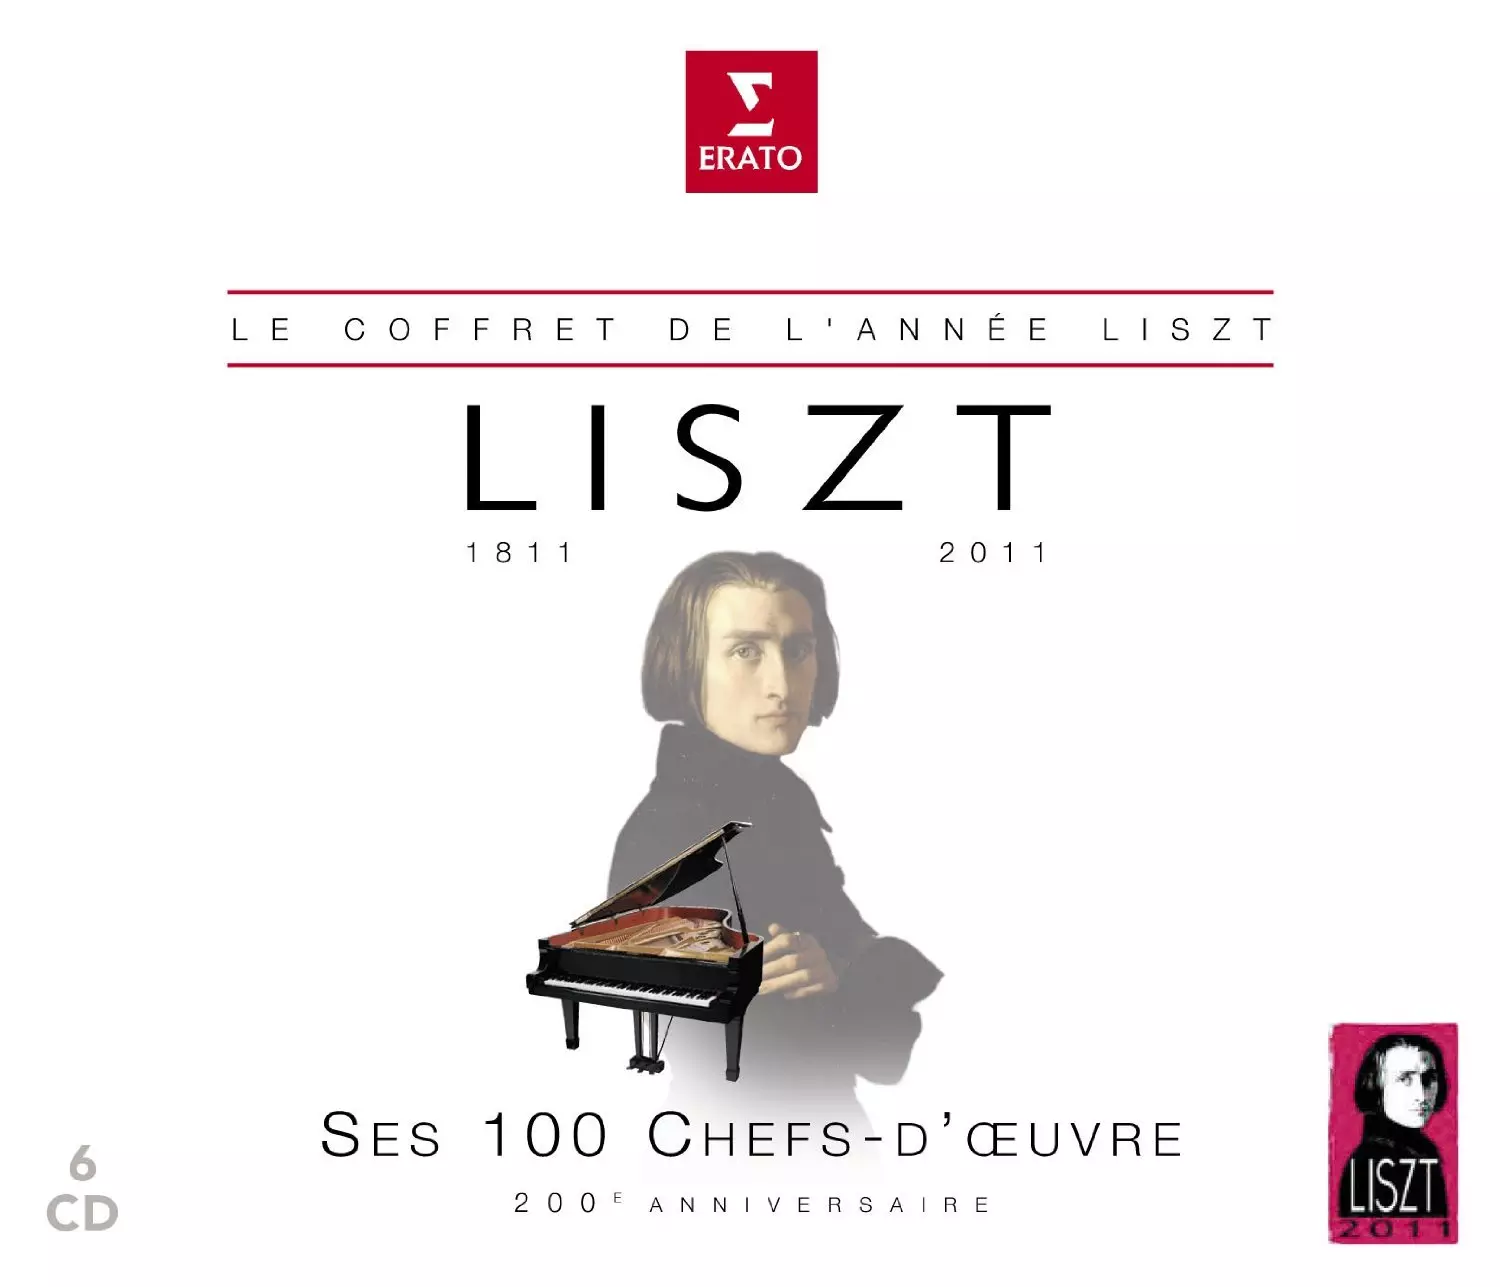 Liszt 6 CD 100 Best